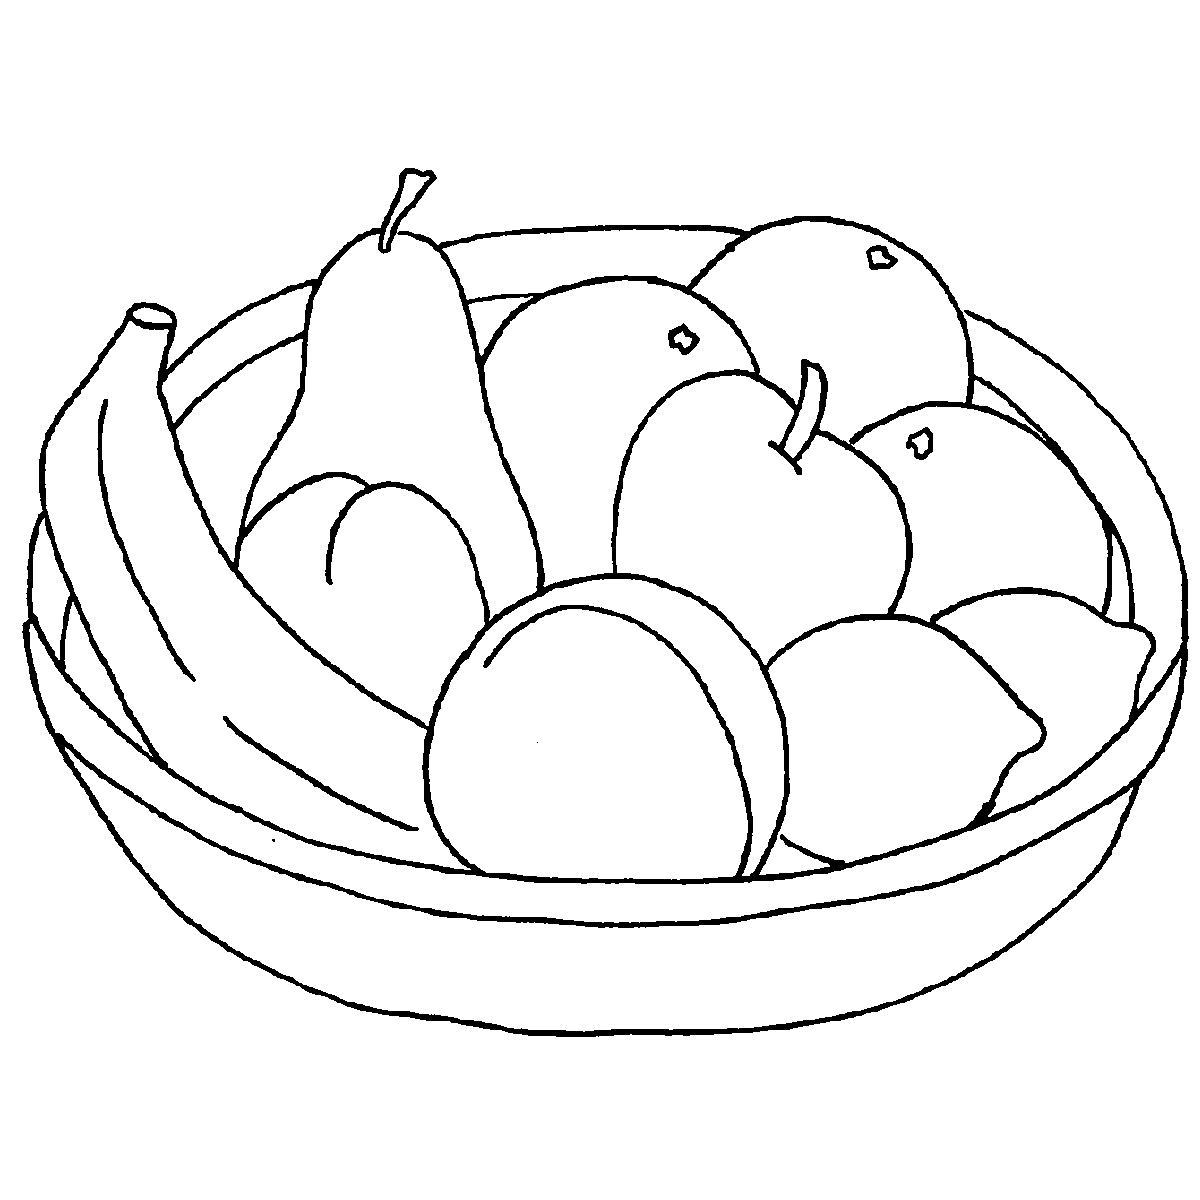 Тарелка с фруктами раскраска для детей